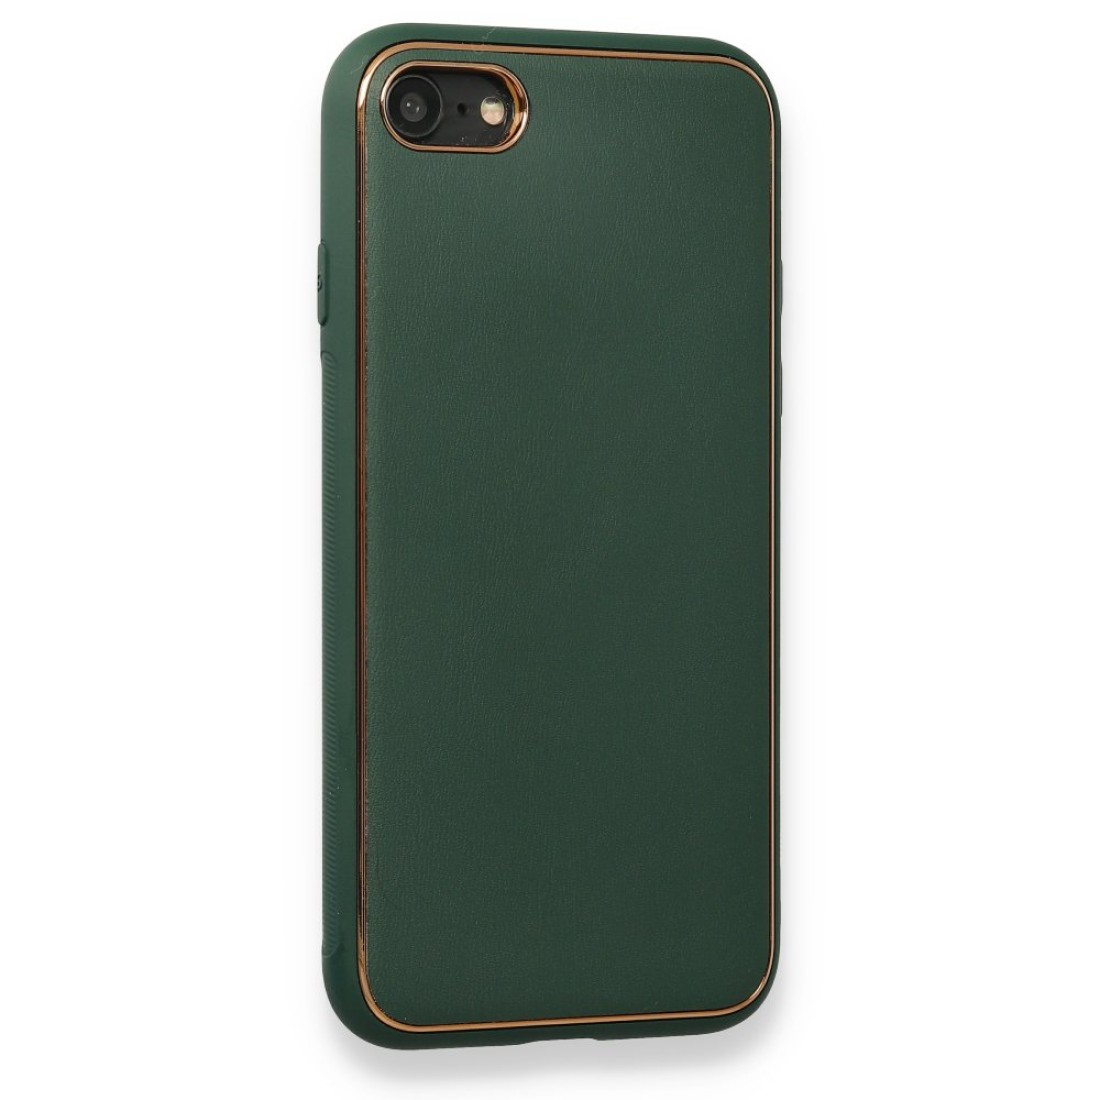 Apple iPhone SE 2020 Kılıf Coco Deri Silikon Kapak - Yeşil